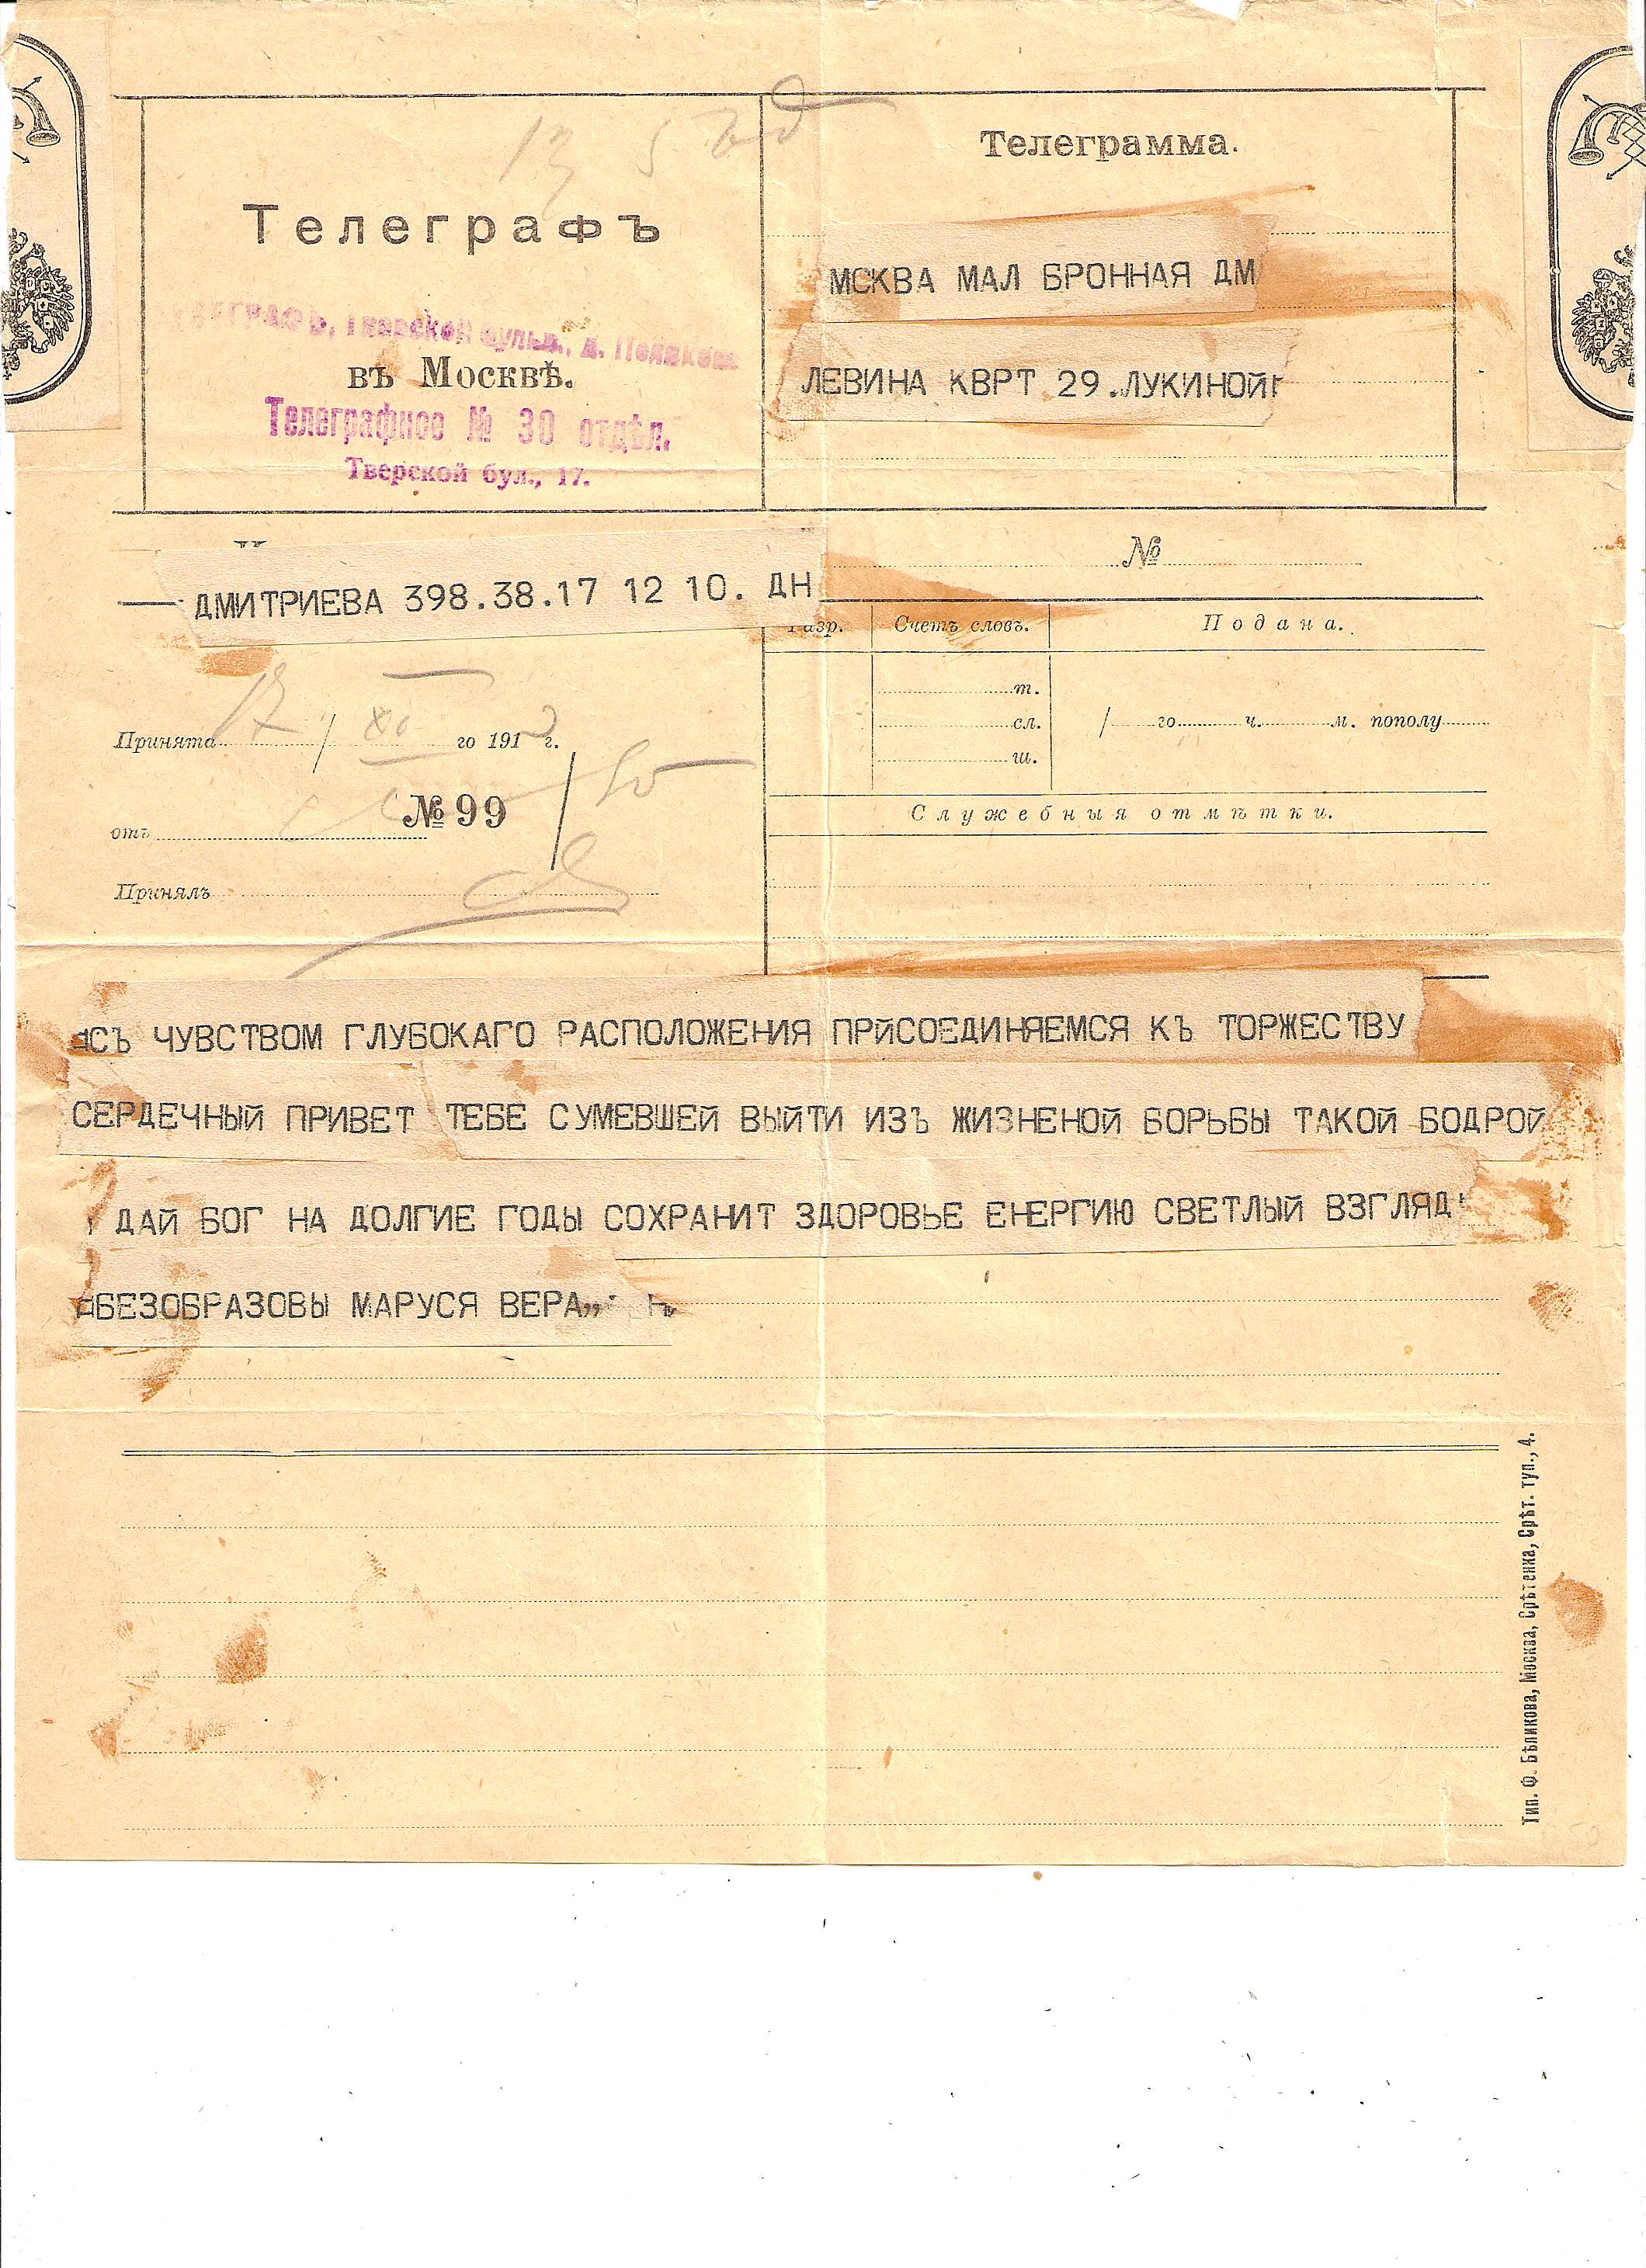 Russia Postal History - Postal Documents, Receipts Telegramms Scott 1913 